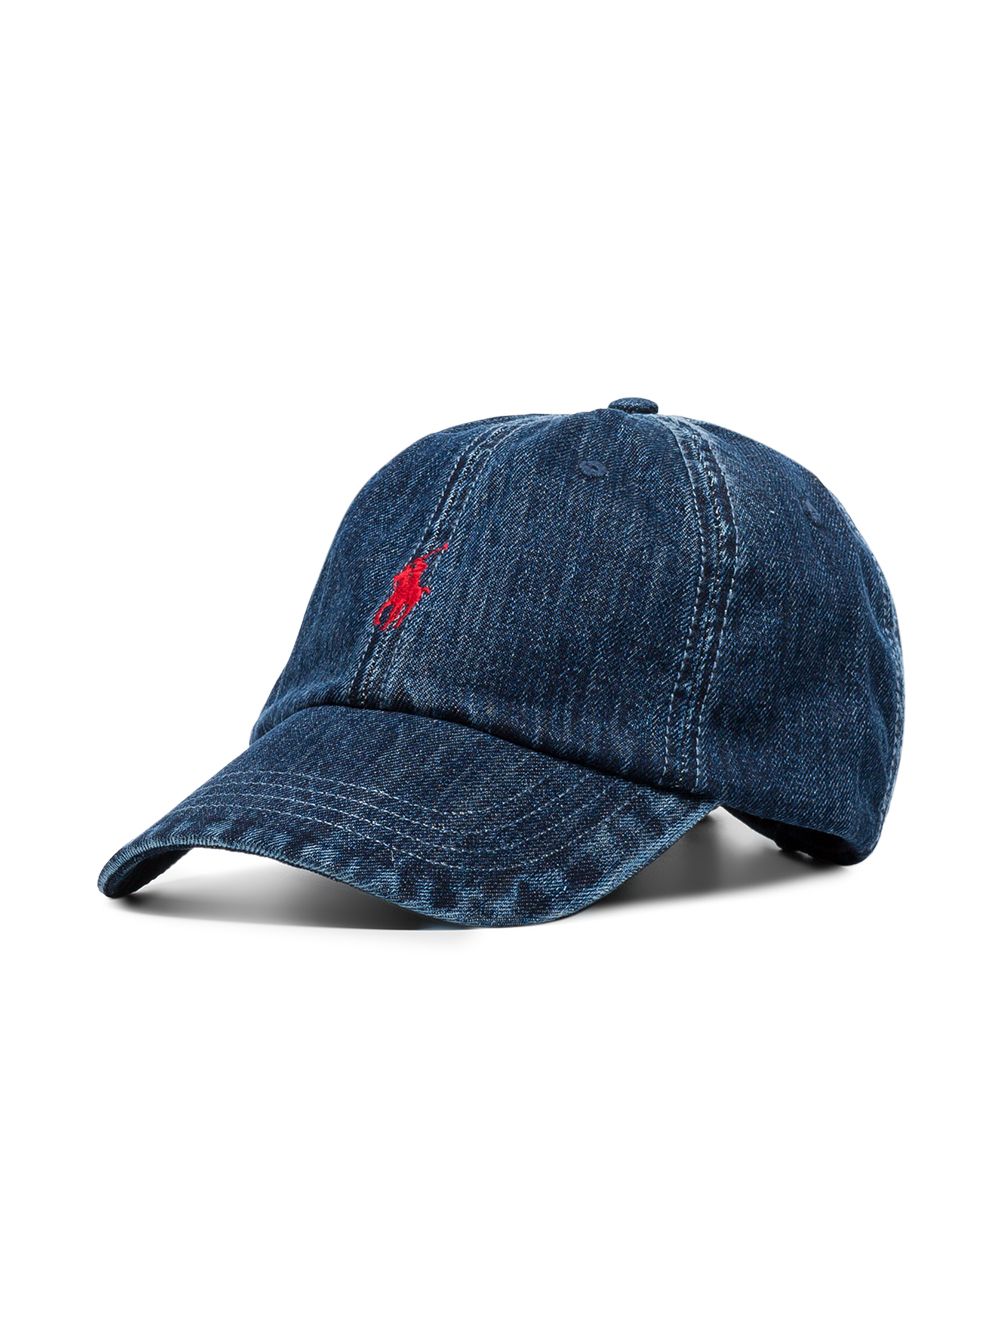 фото Polo ralph lauren джинсовая кепка с вышитым логотипом